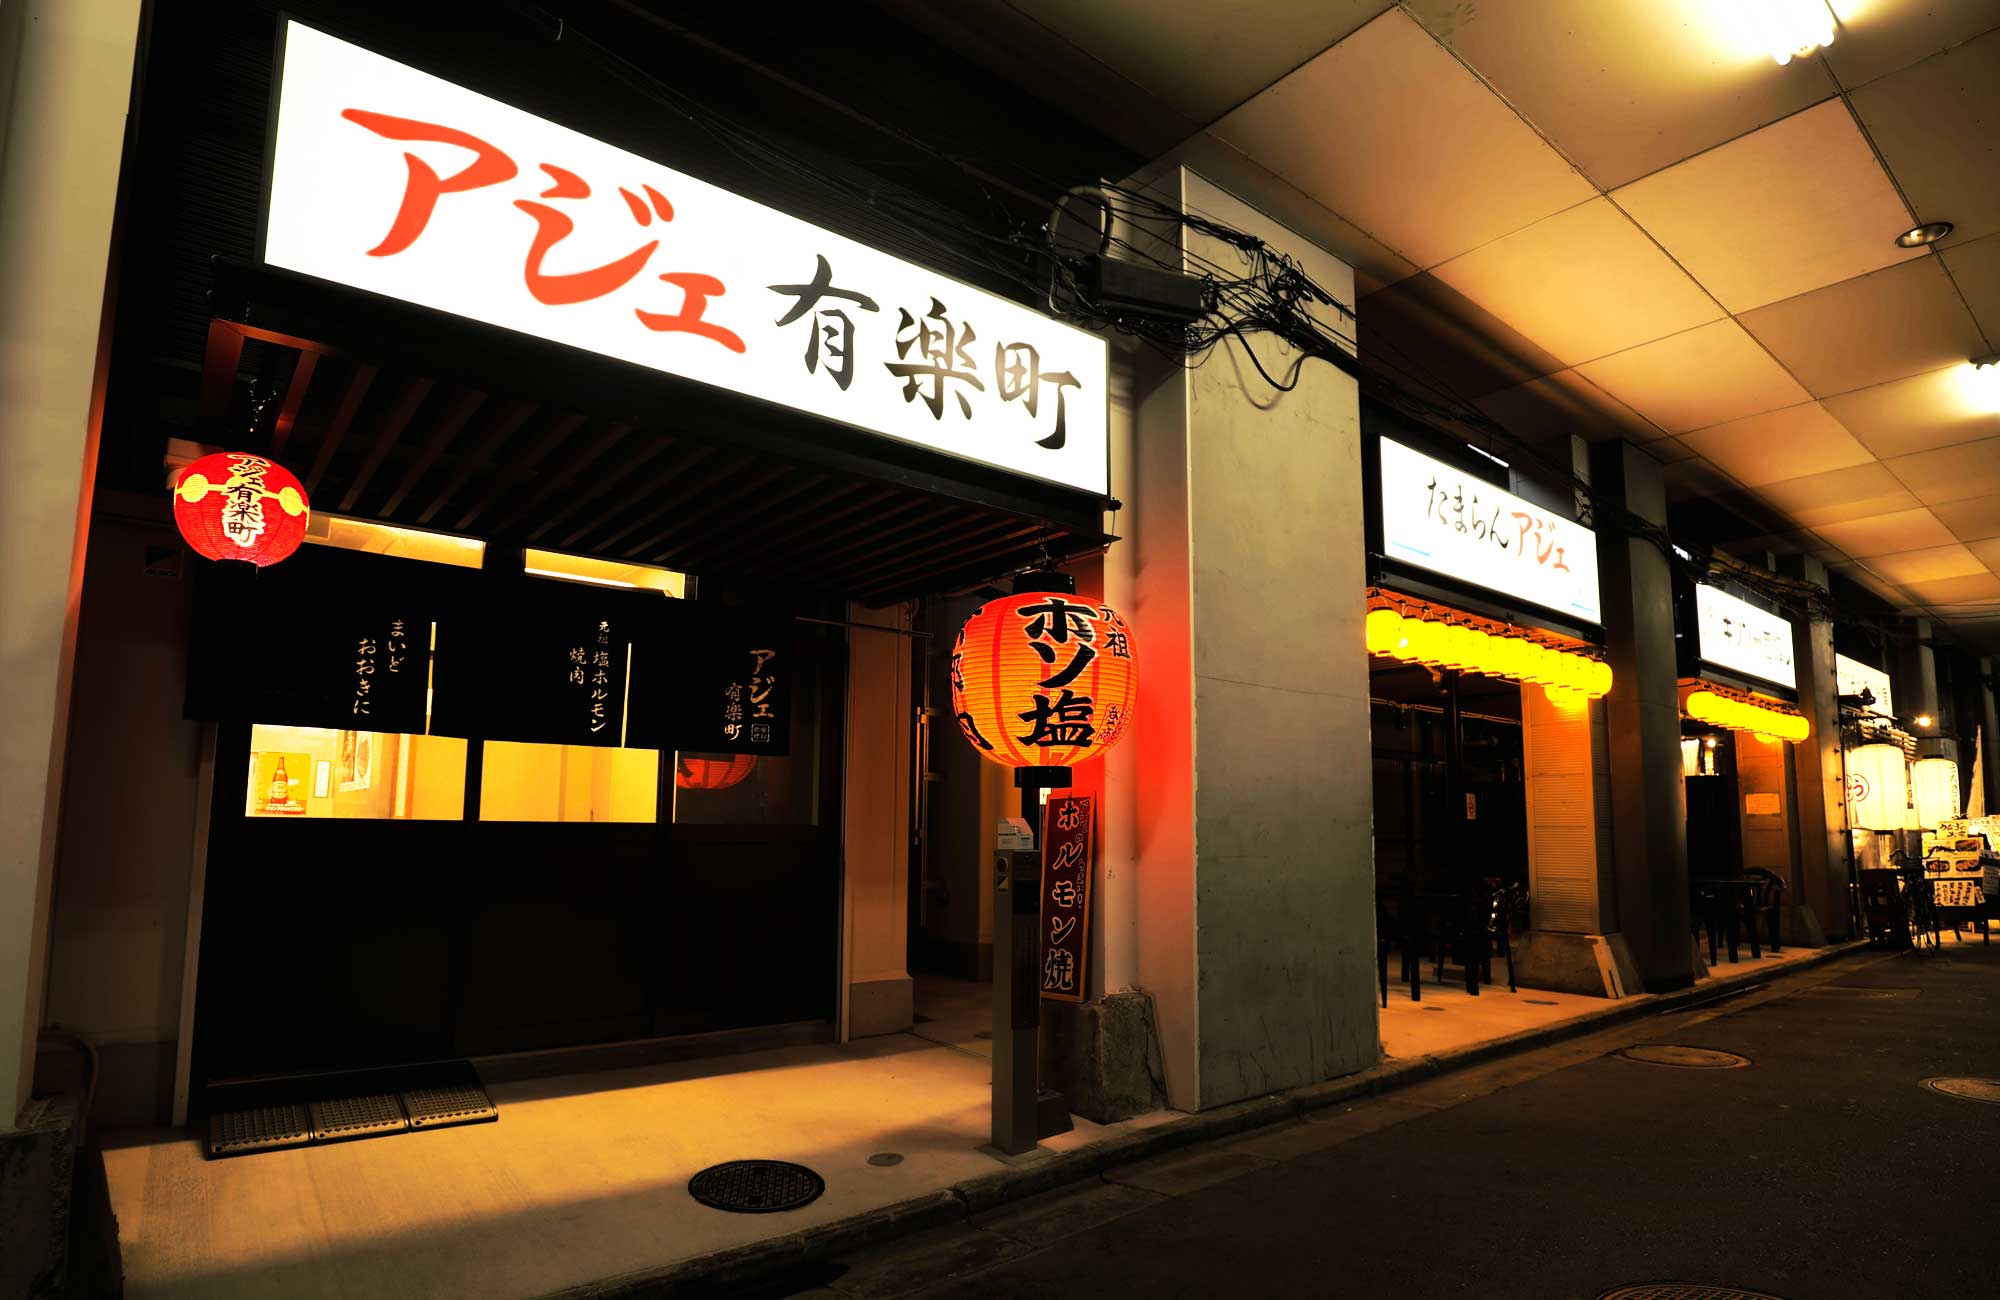 「アジェ® 有楽町」東京 有楽町についにオープン。アジェ®の集大成が詰まった店舗に是非お越し下さい。